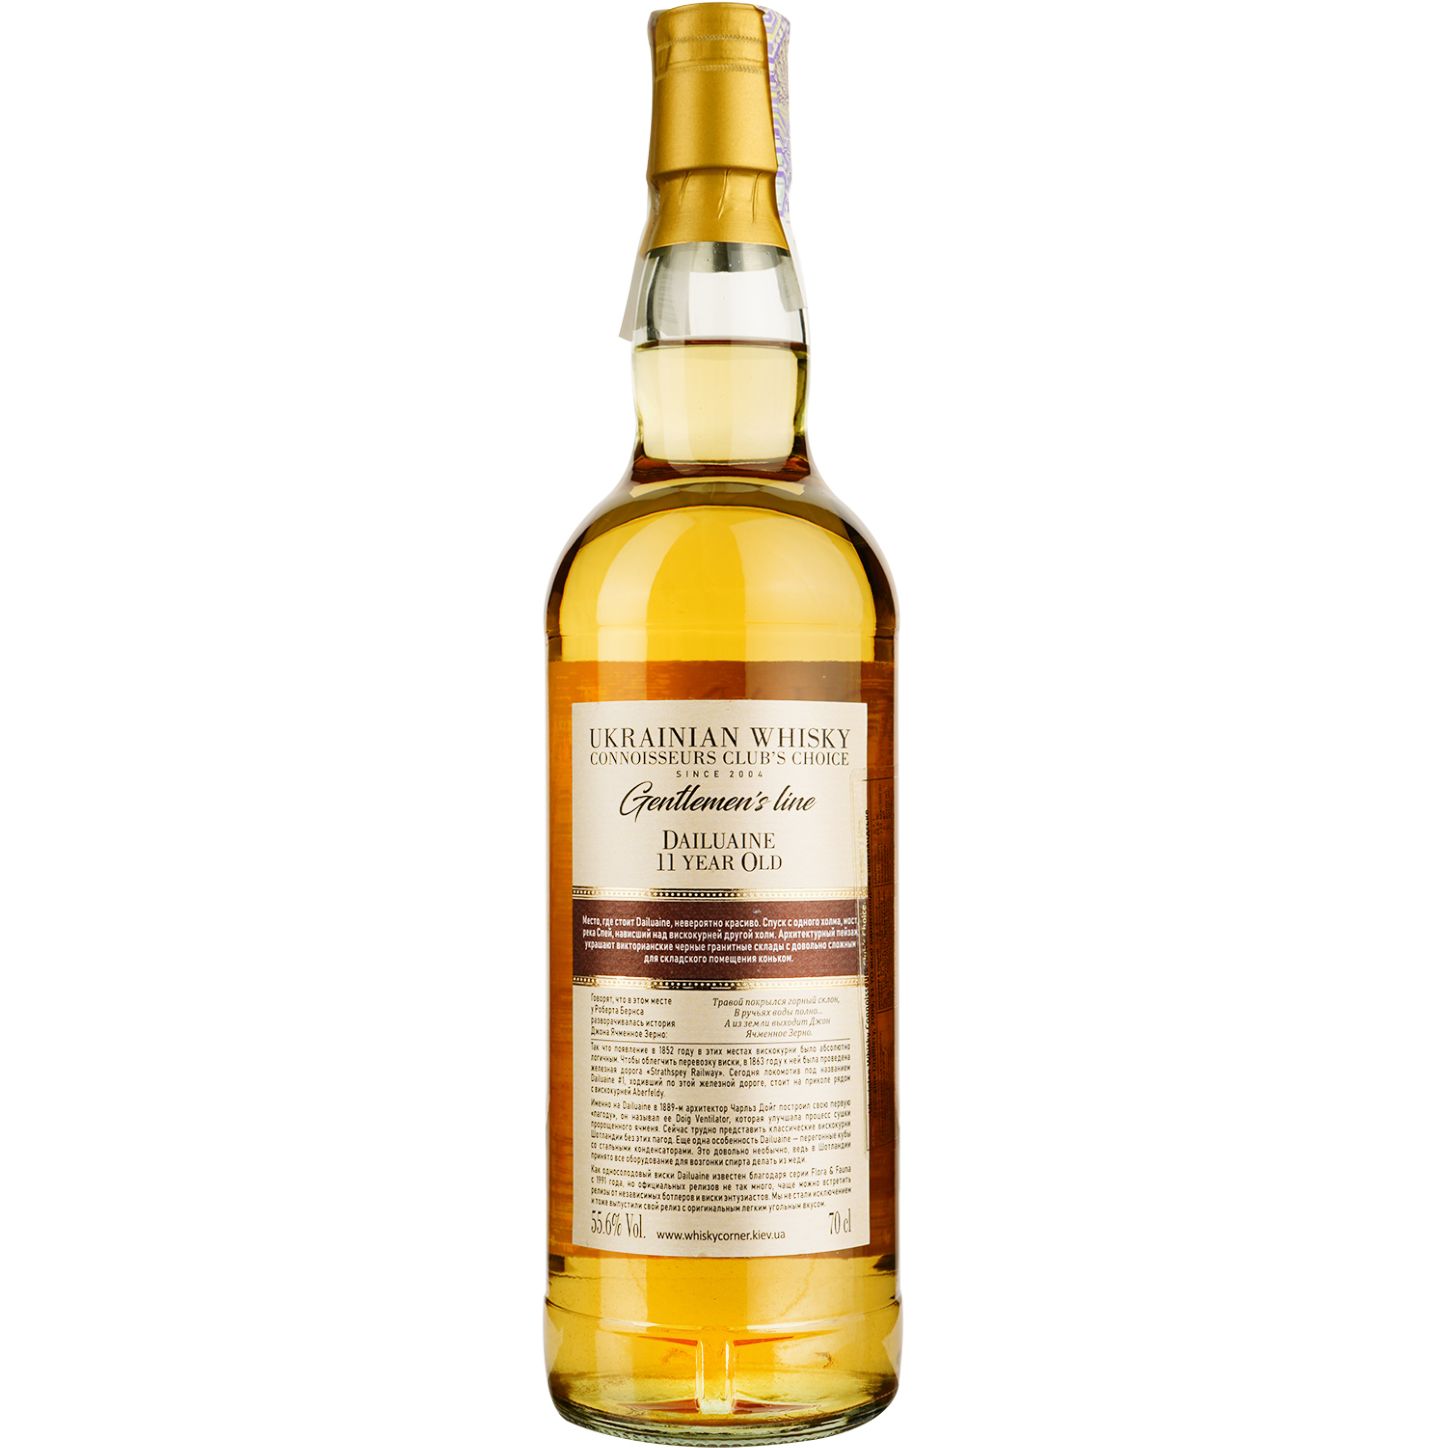 Віскі Dailuaine 11 Years Old Single Malt Scotch Whisky, у подарунковій упаковці, 55,6%, 0,7 л - фото 4